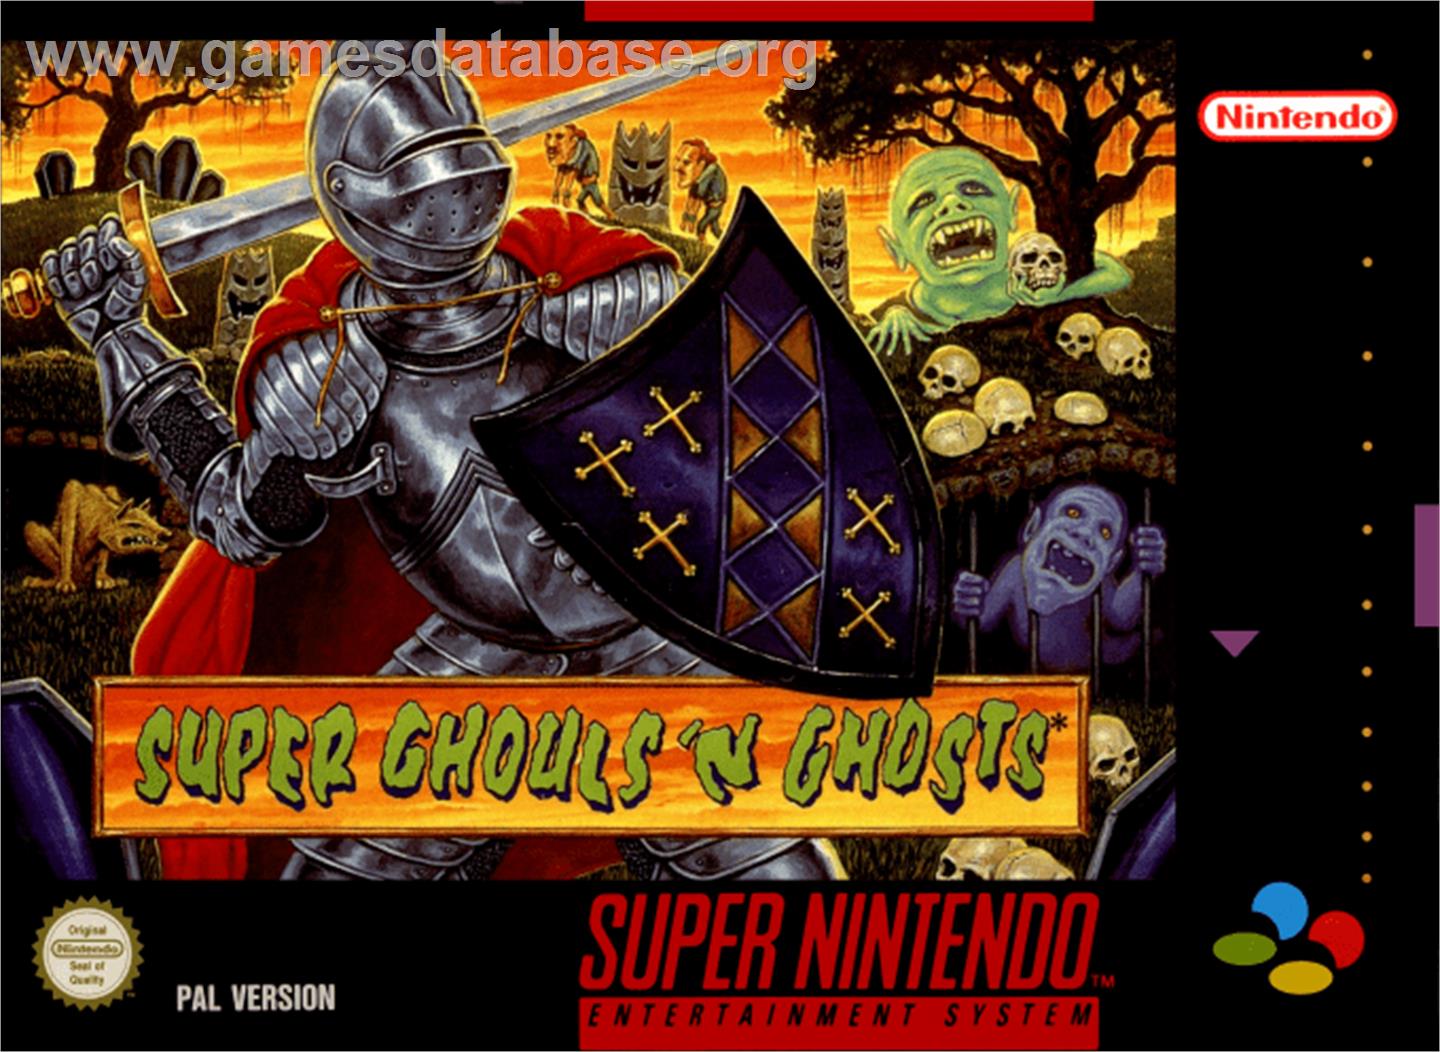 Super Ghouls 'N Ghosts - Nintendo SNES - Artwork - Box